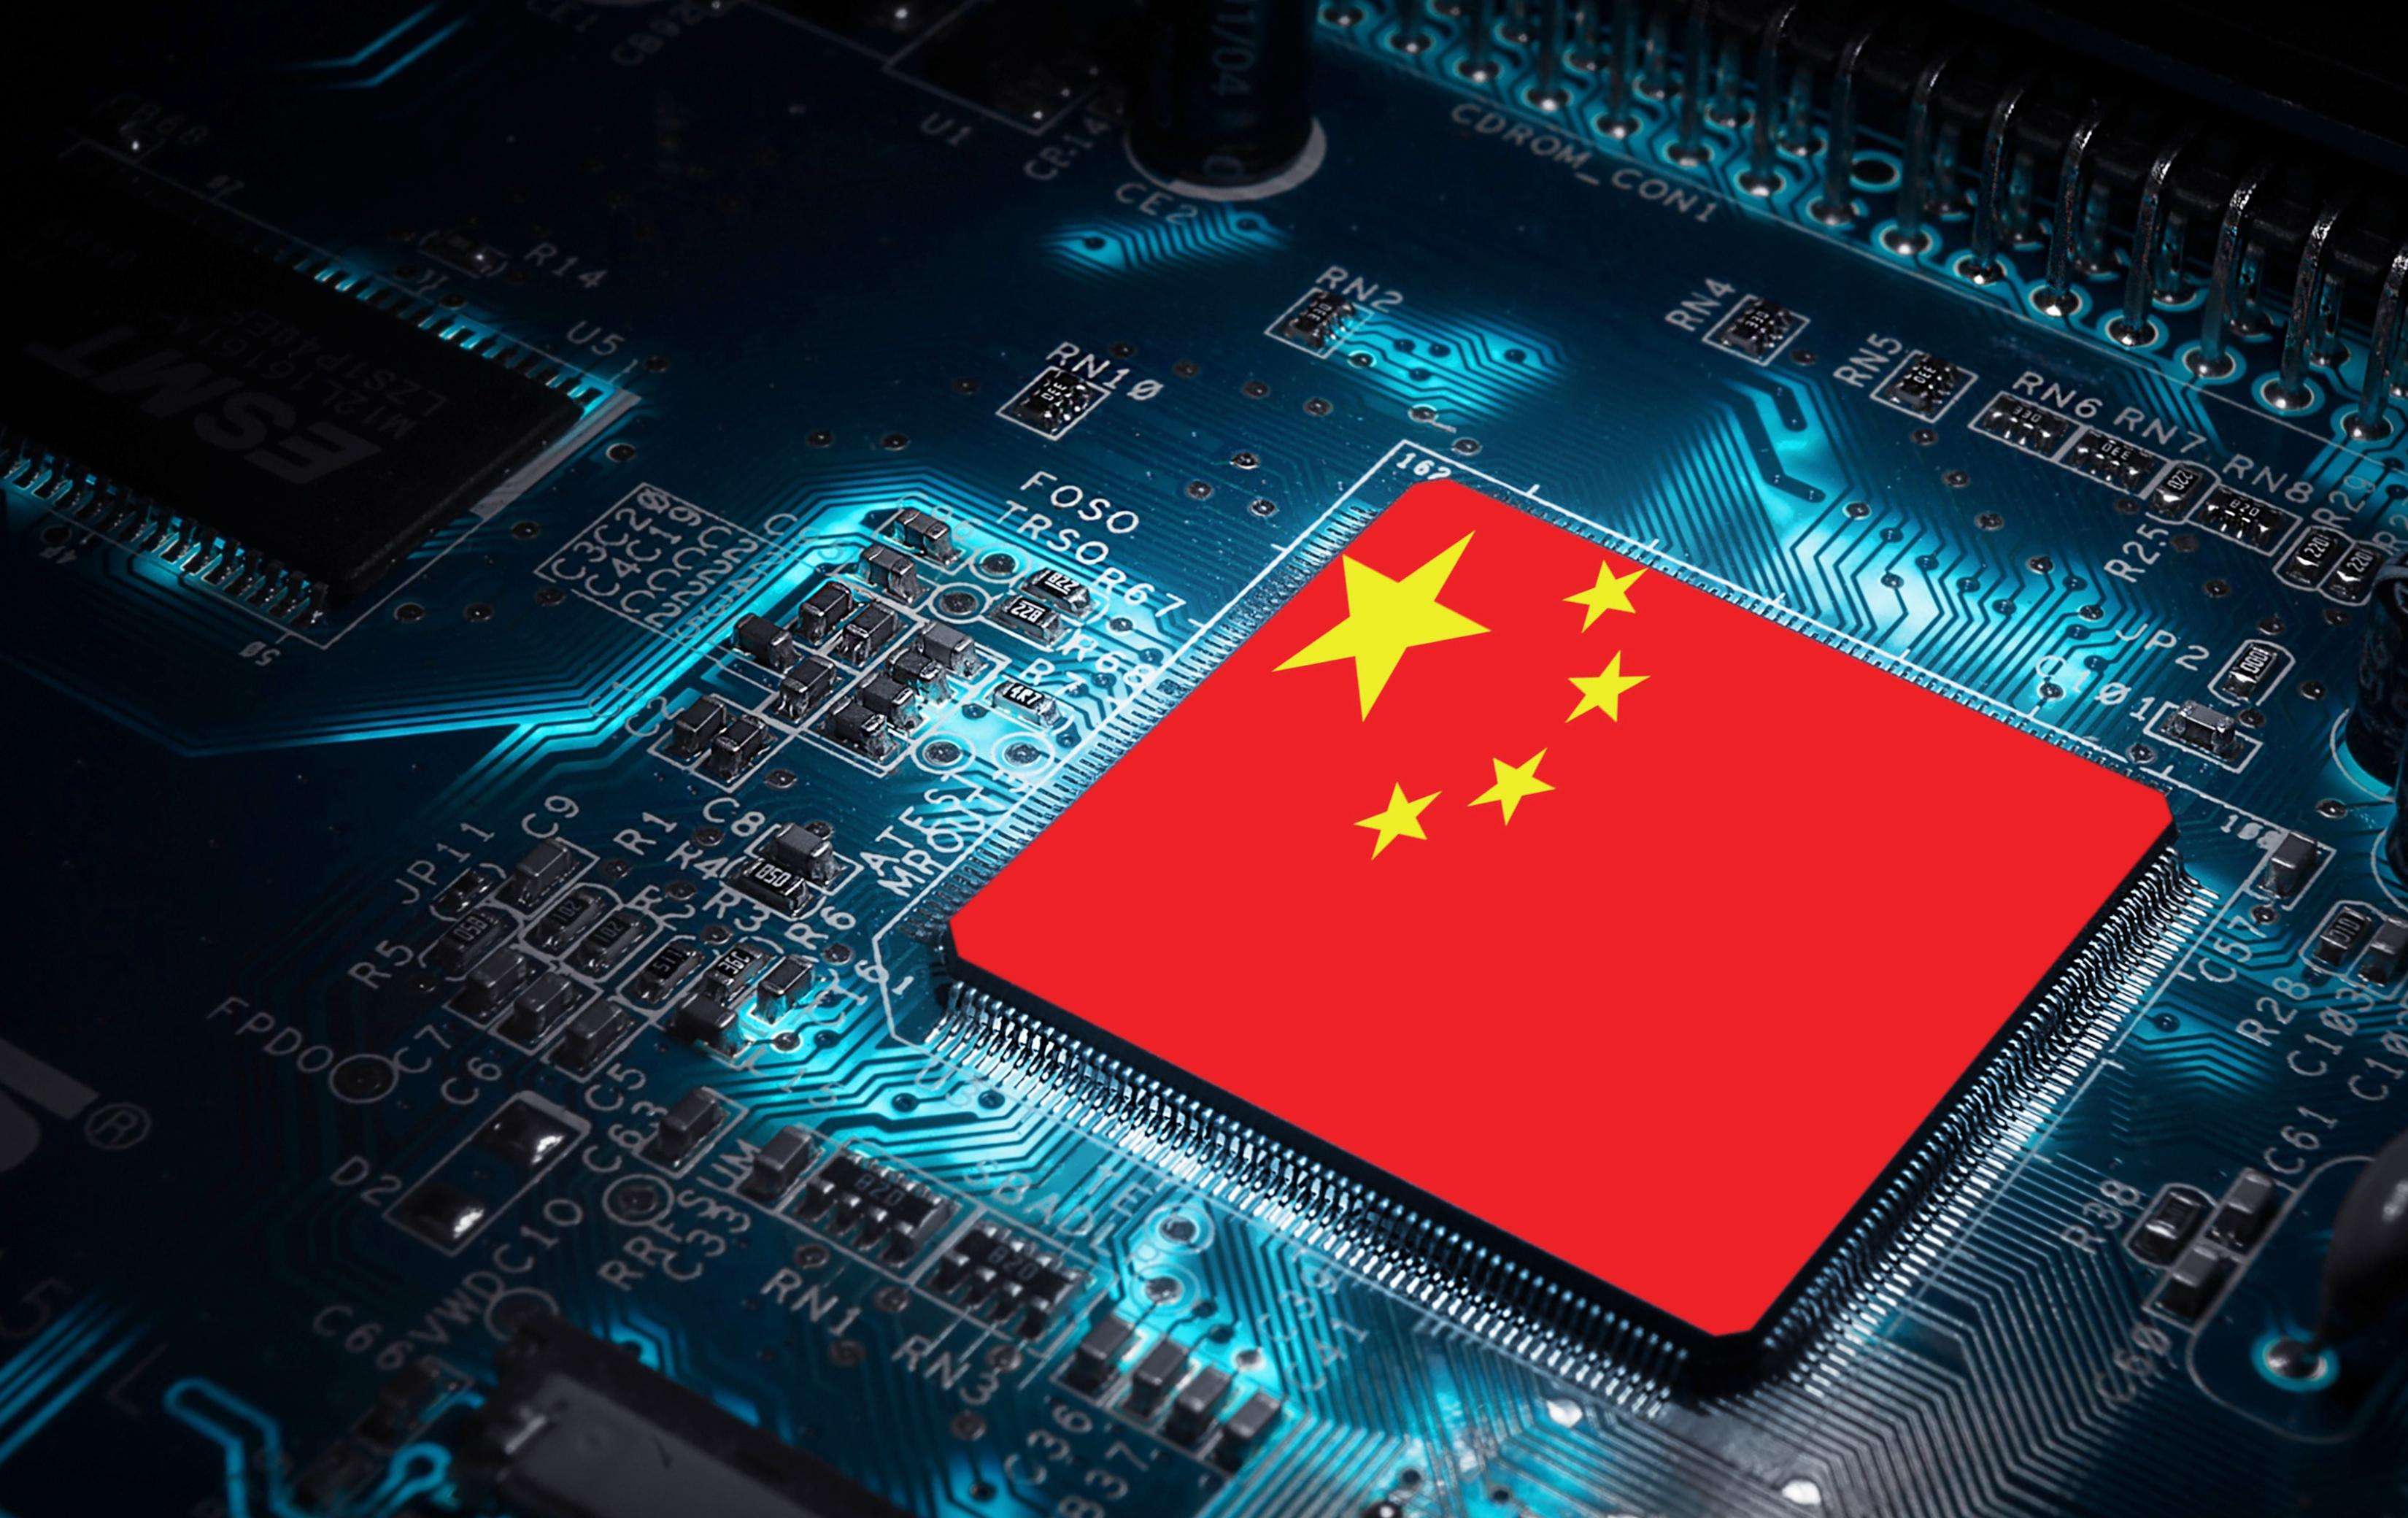 晶圆芯片半导体IC产品长期存储指南-行业知识-深圳市怡和兴机电科技有限公司